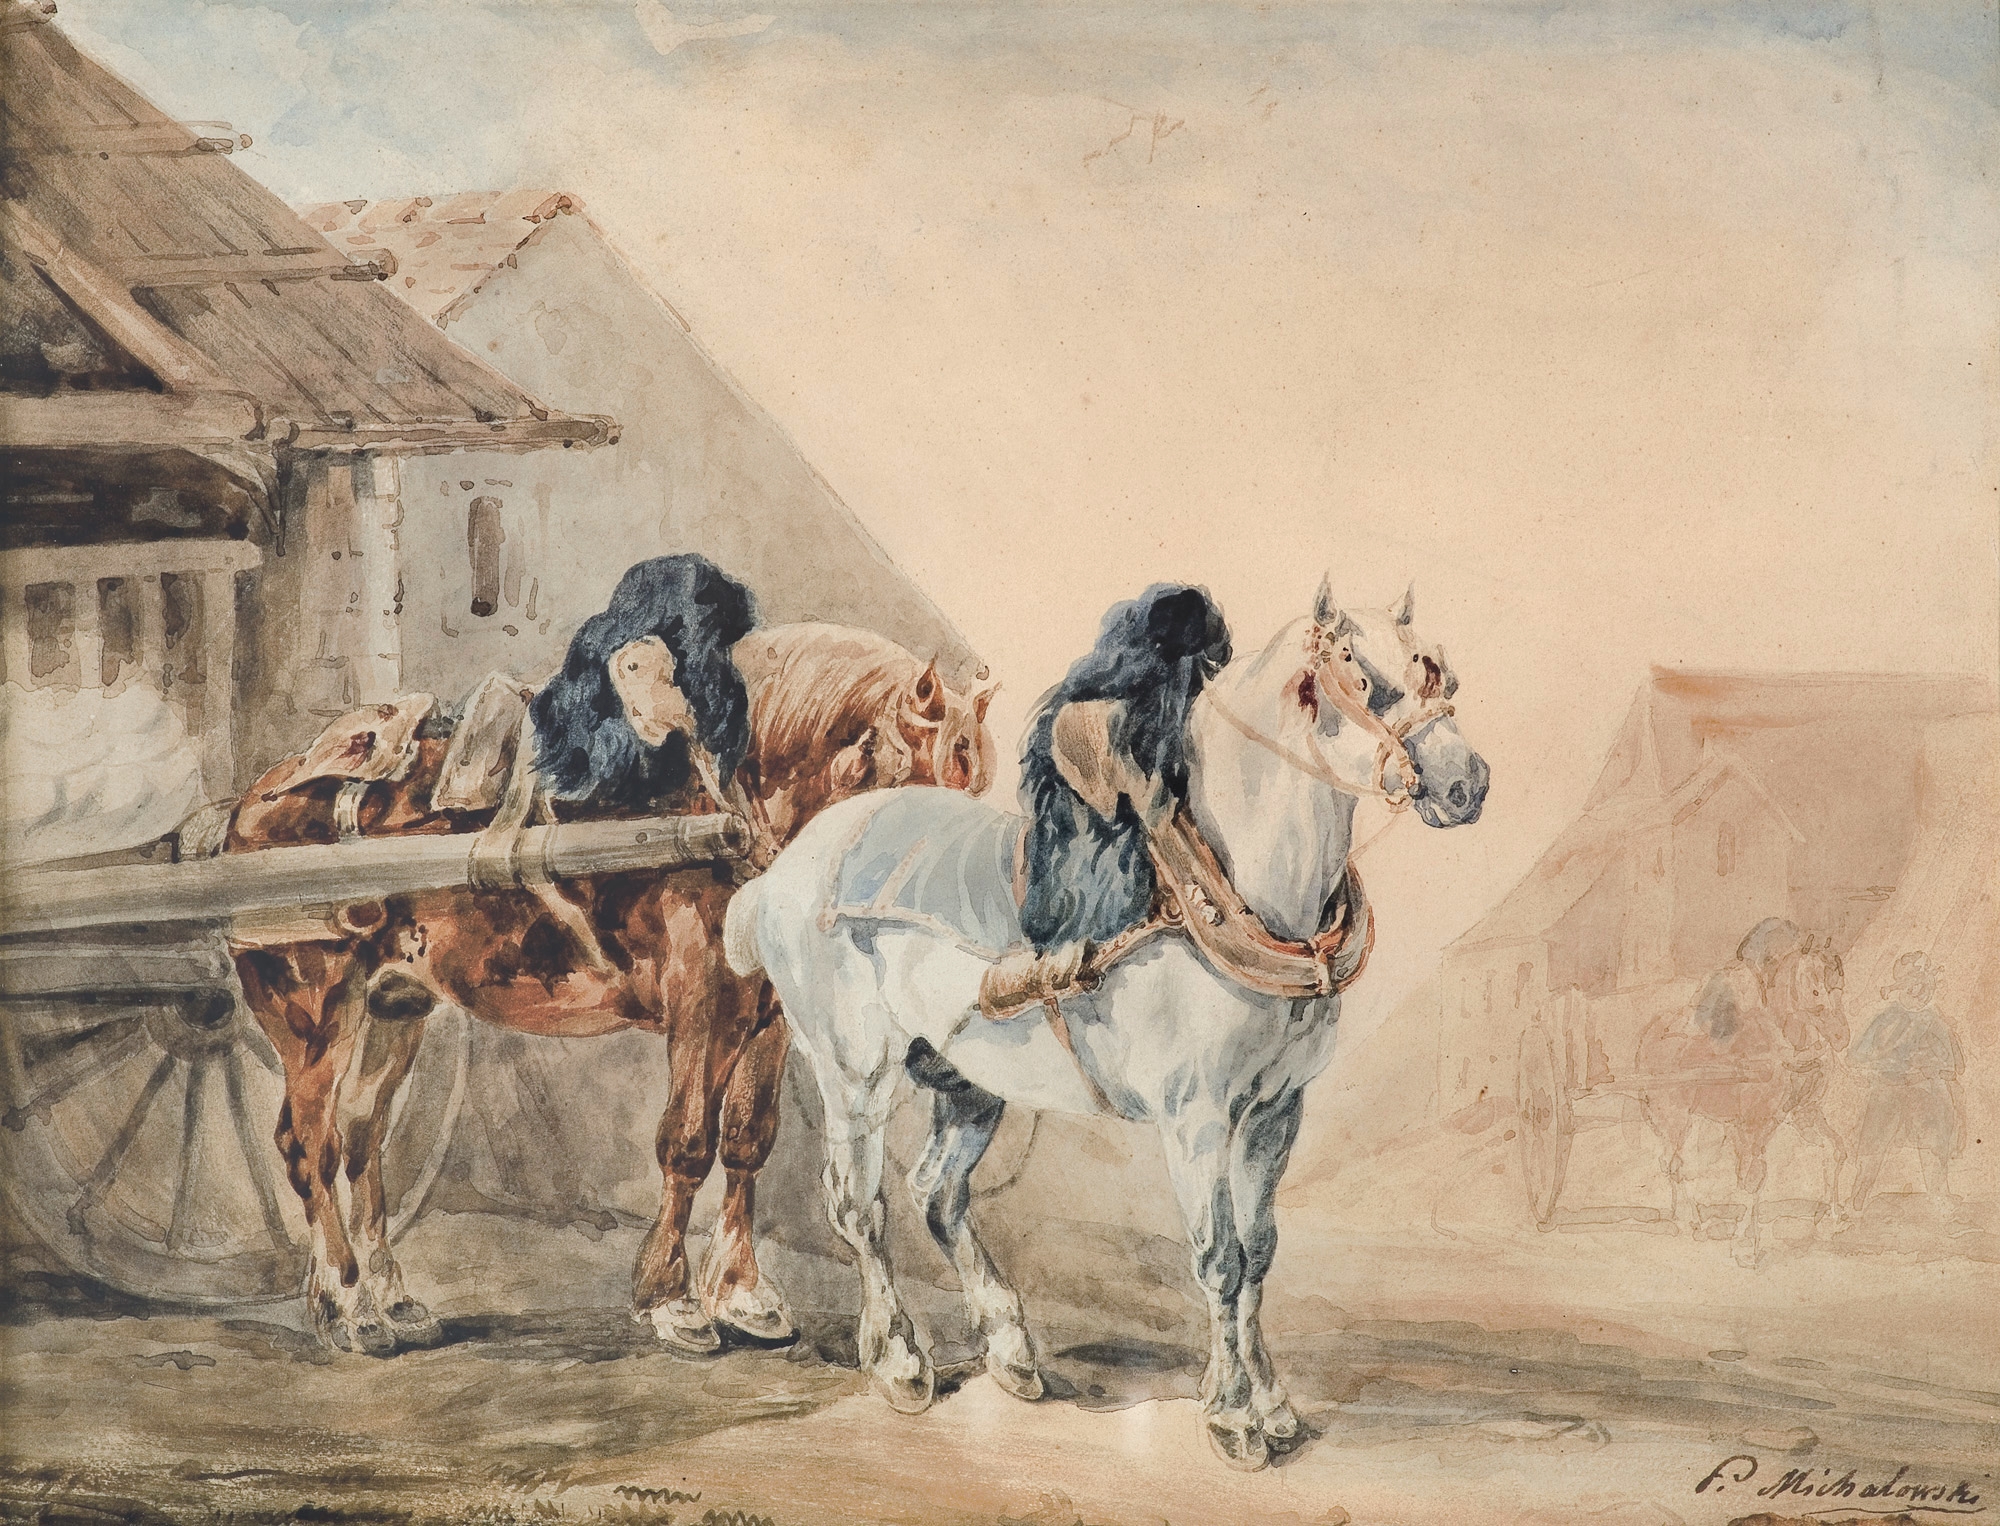 PERSZERONY ZAPRZĘŻONE DO WOZU by Piotr Michałowski, 1832-1835